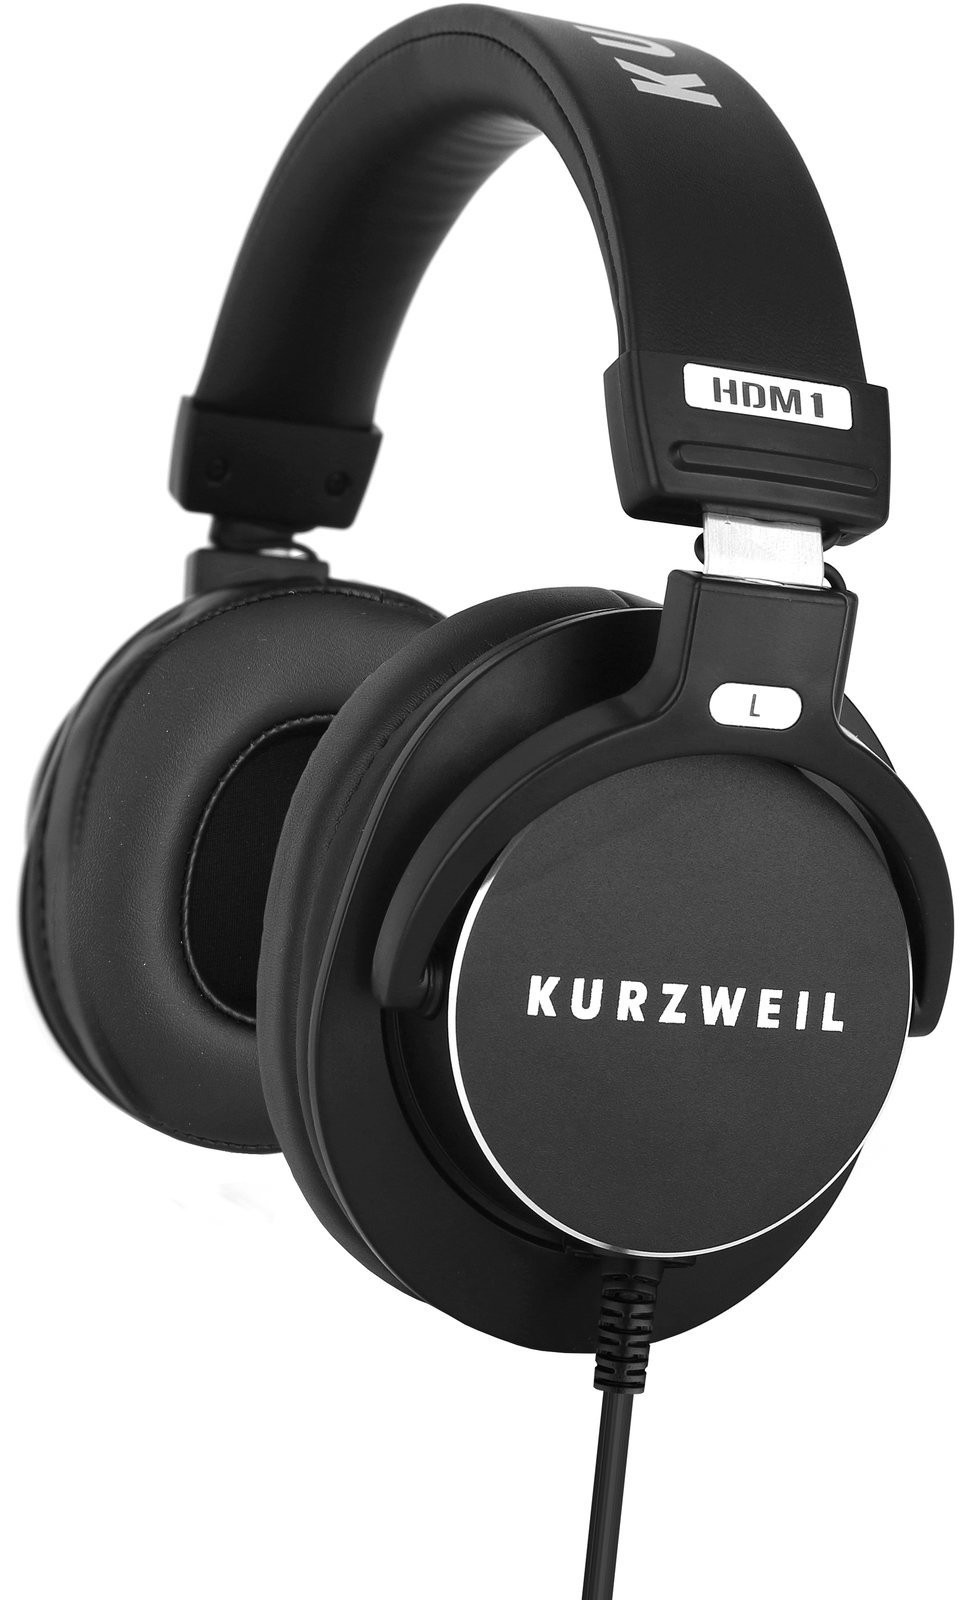 On-ear Headphones Kurzweil HDM1 Black